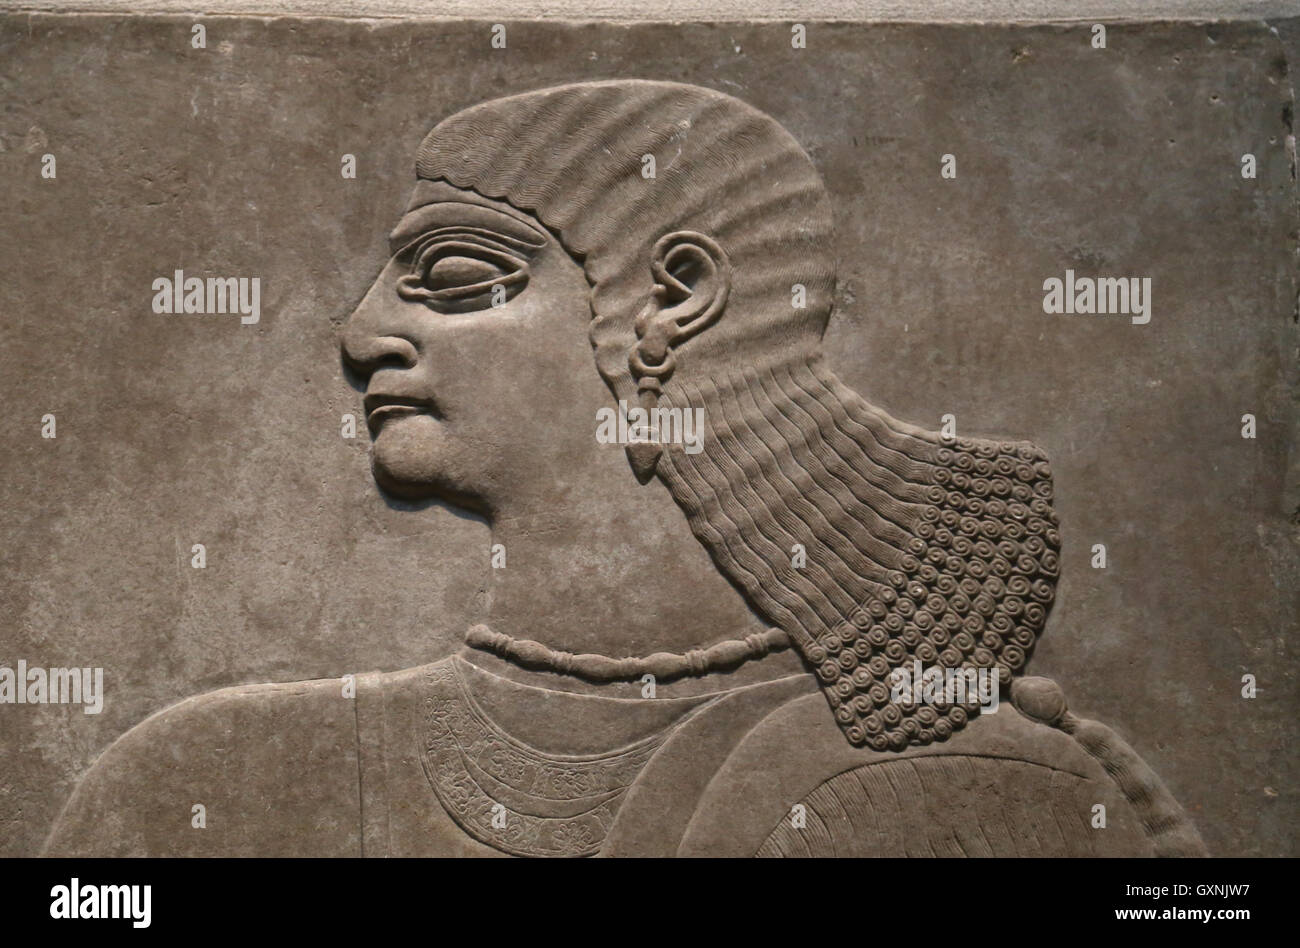 Rilievo dell'uomo. Ix secolo A.C. Neo-Assyrian. Nimrud (antica Kalhu). Mesopotamia settentrionale. Alabastro. Foto Stock